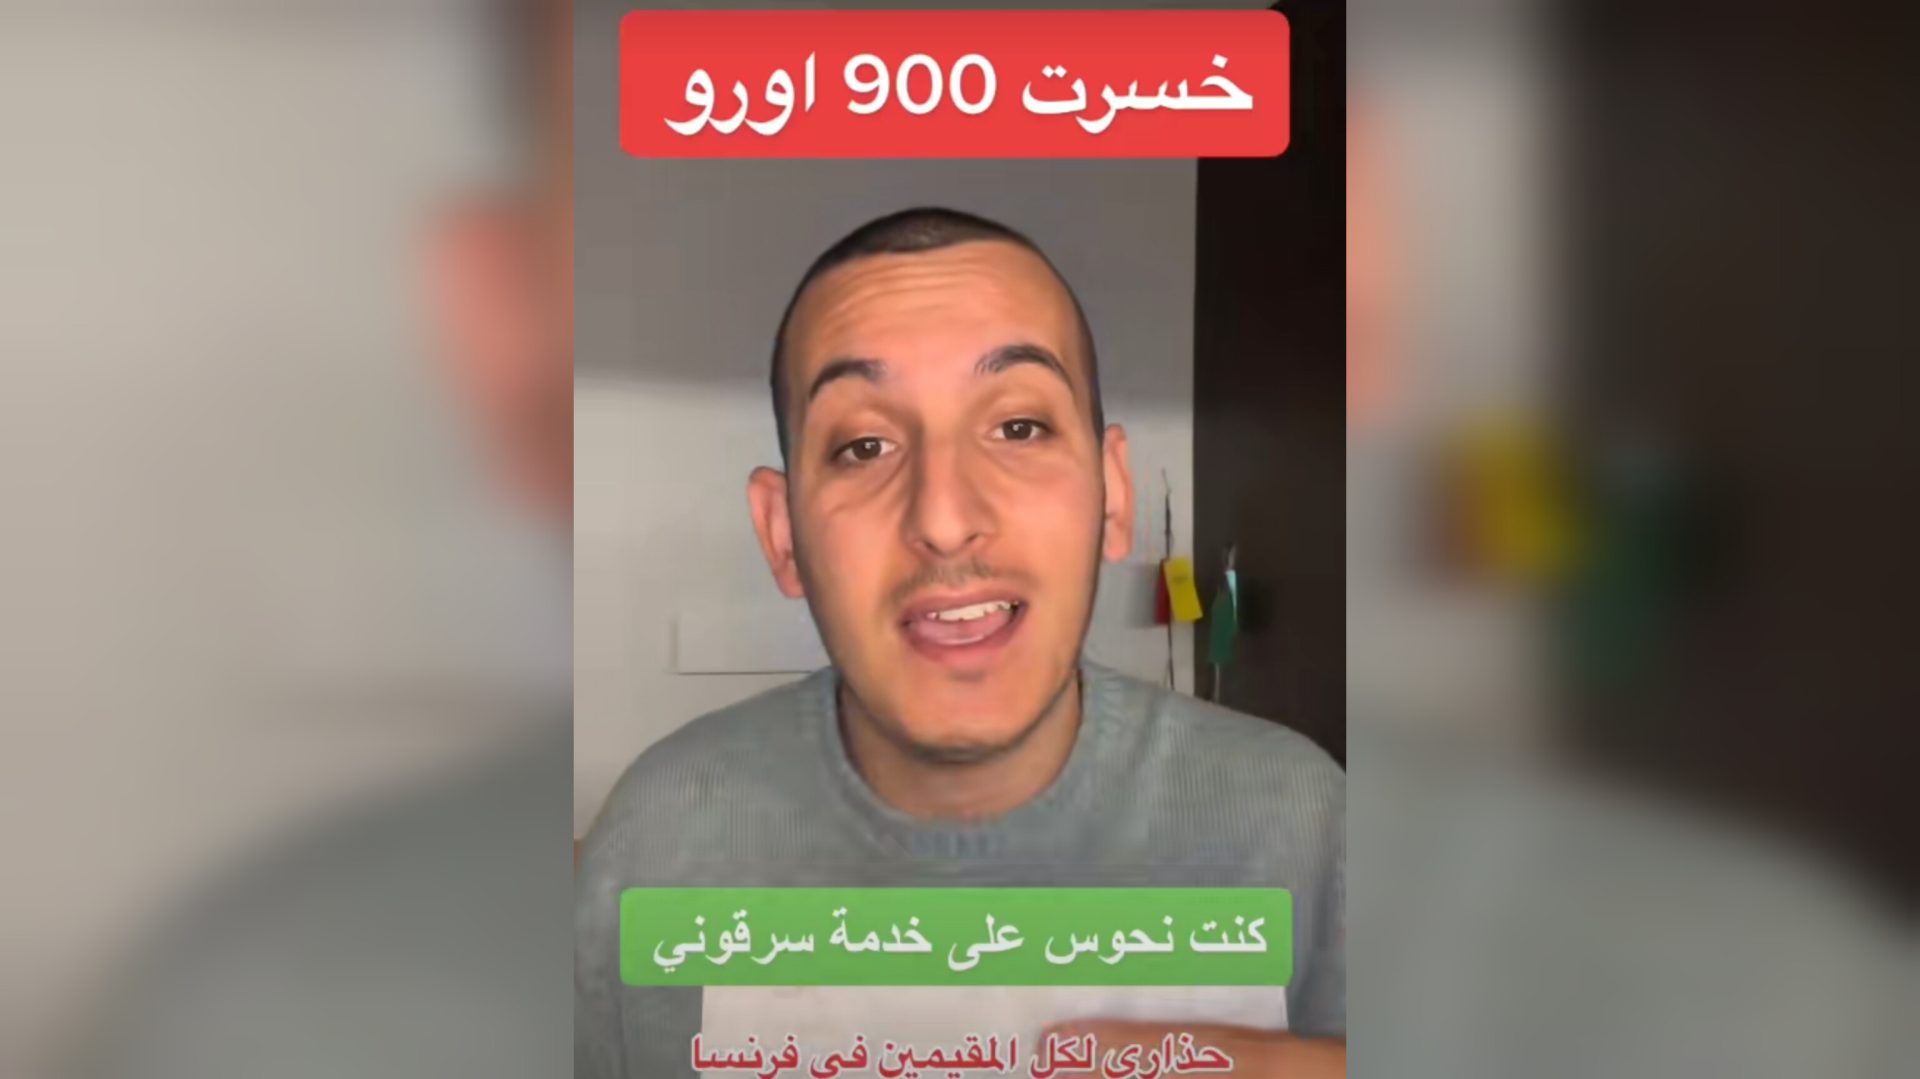 Perte d'un chèque de 900 euros : un algérien de France victime d'une arnaque ( vidéo)